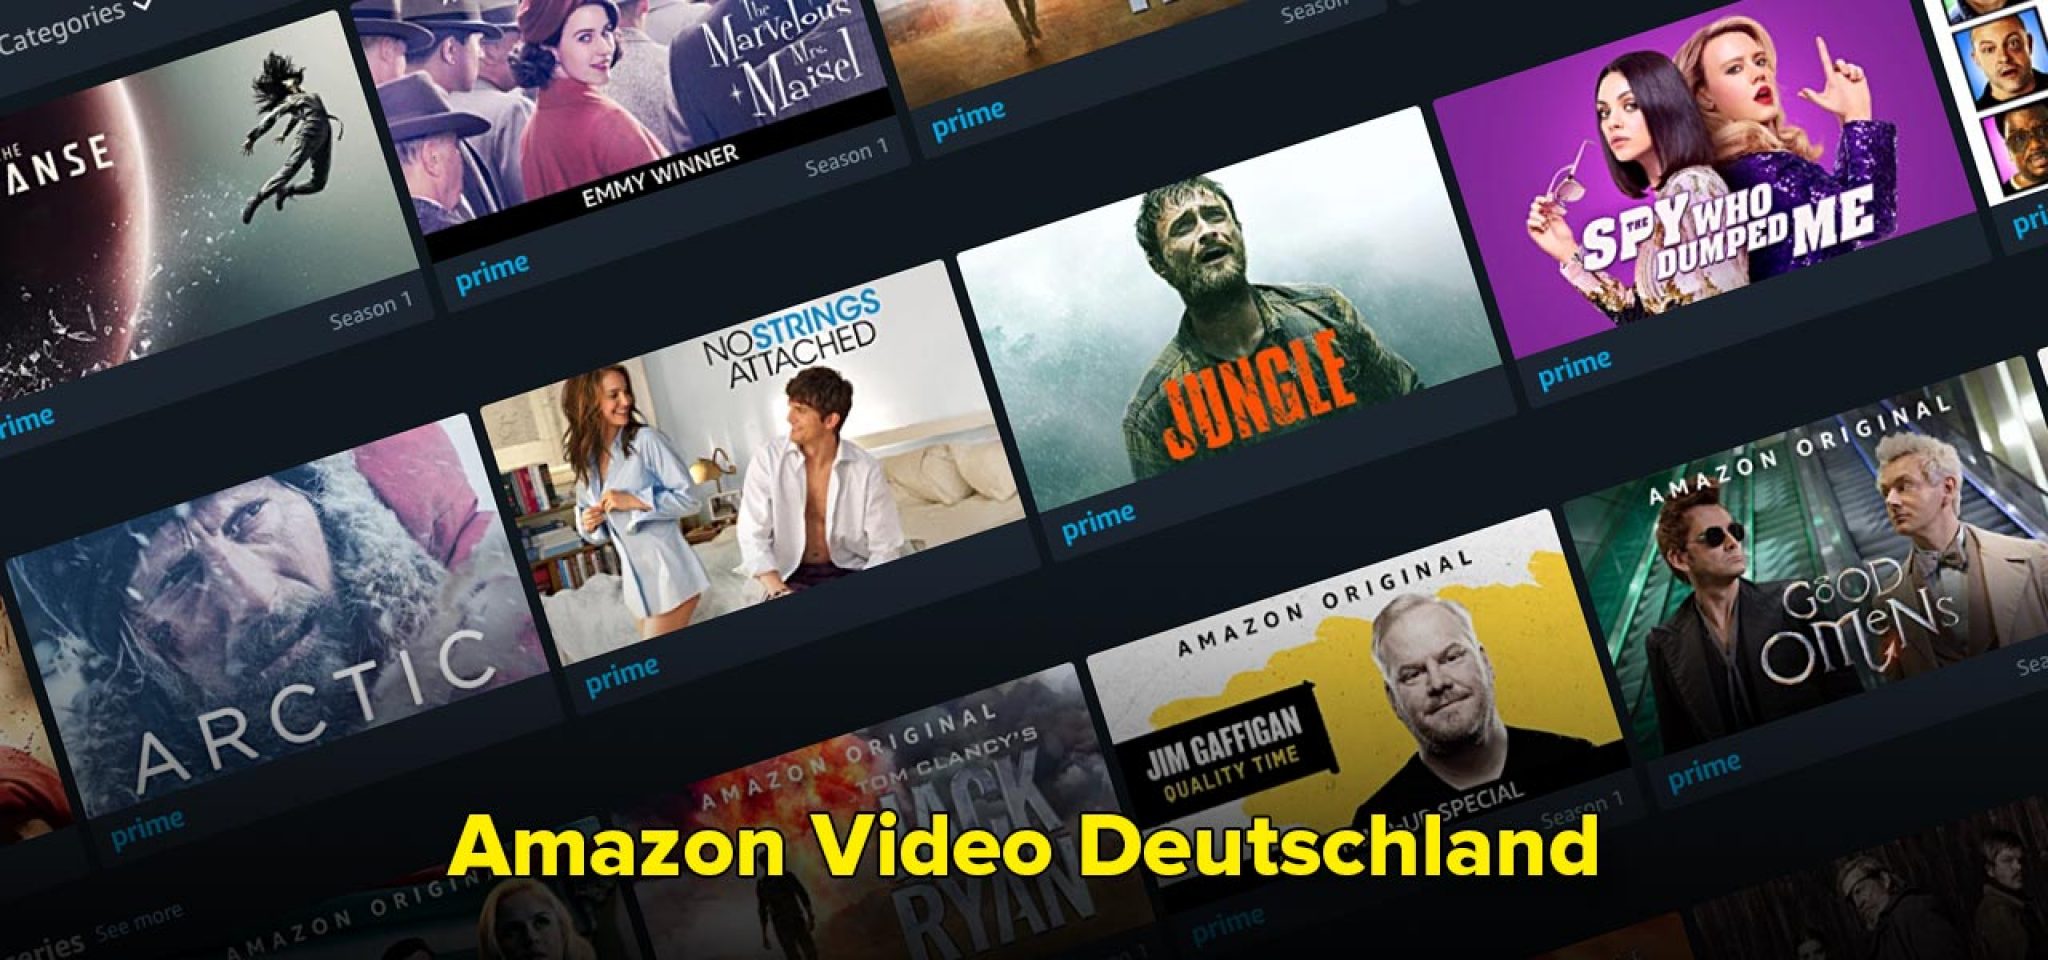 Amazon Video Deutschland Per VPN alle Bibliotheken nutzen!